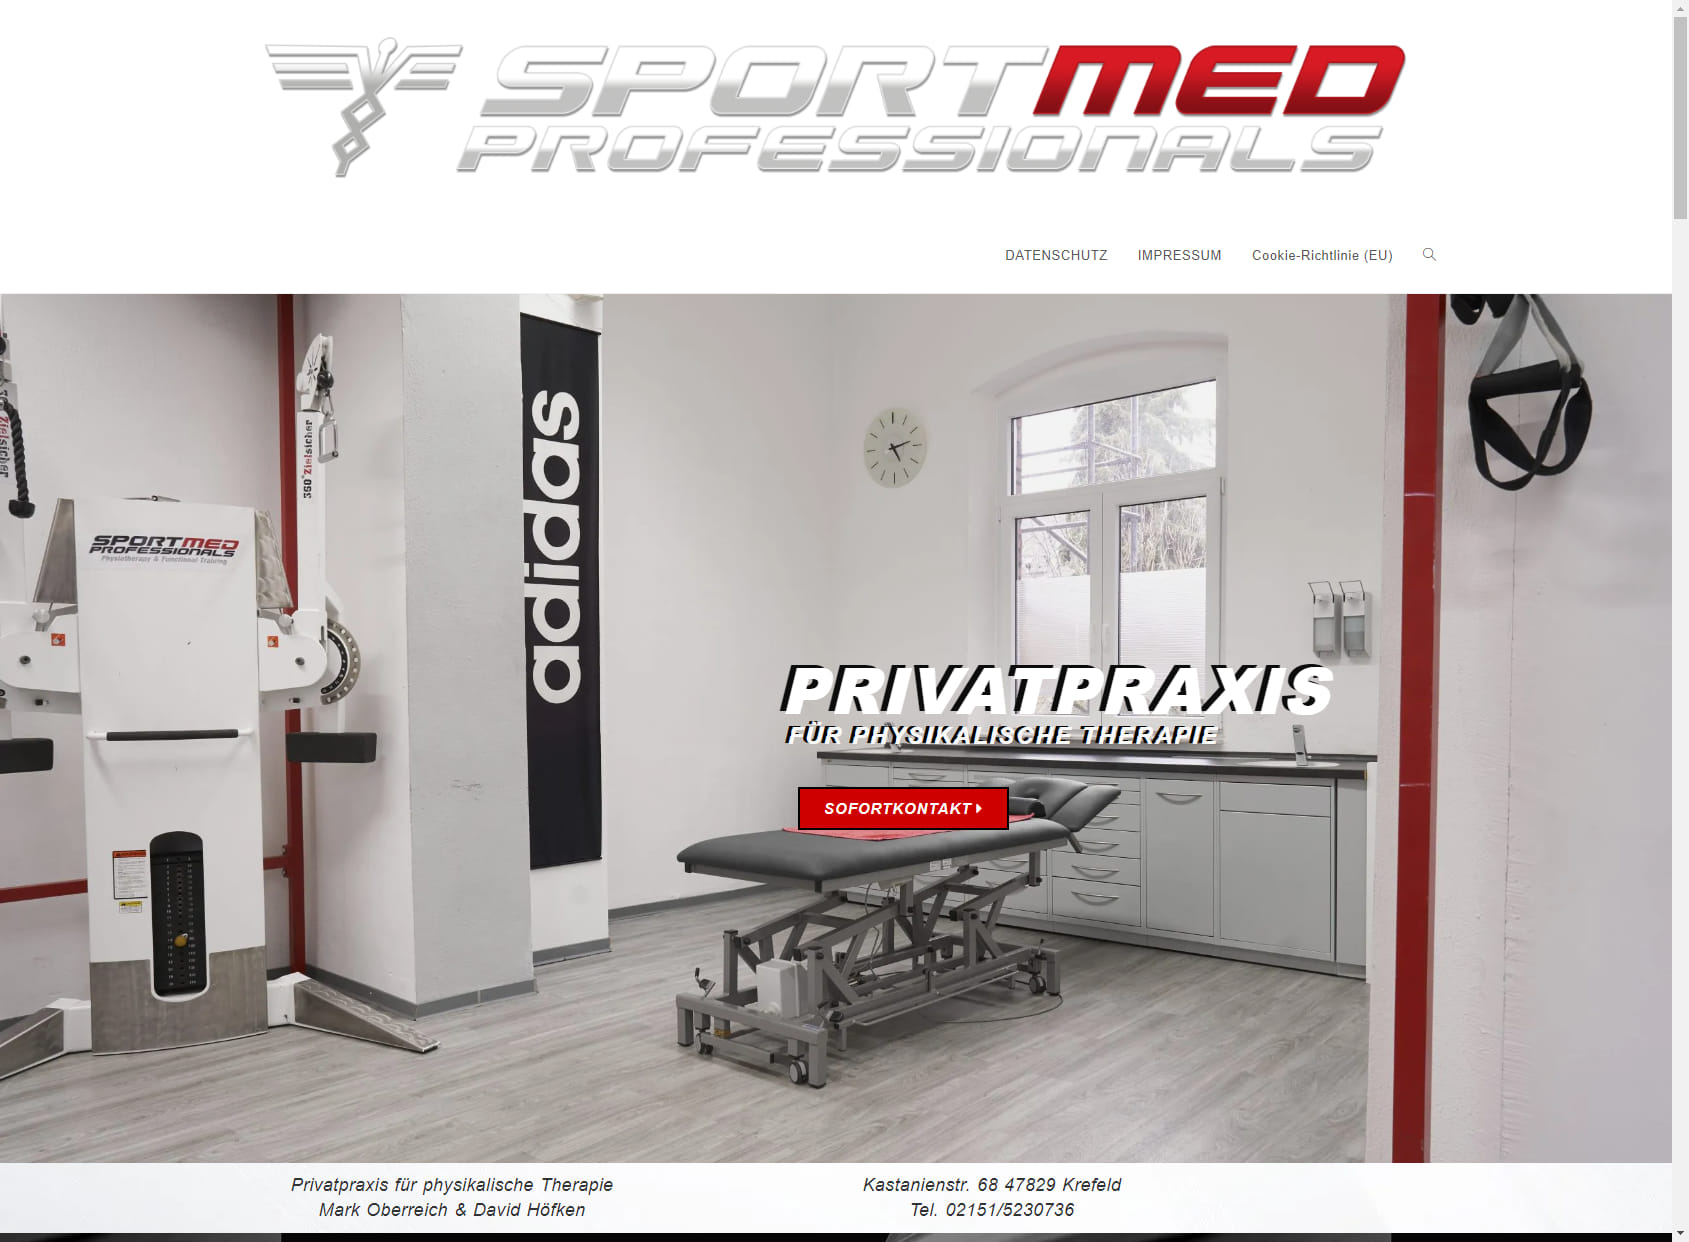 SportMed Professionals Privat Praxis für Physikalische Therapie